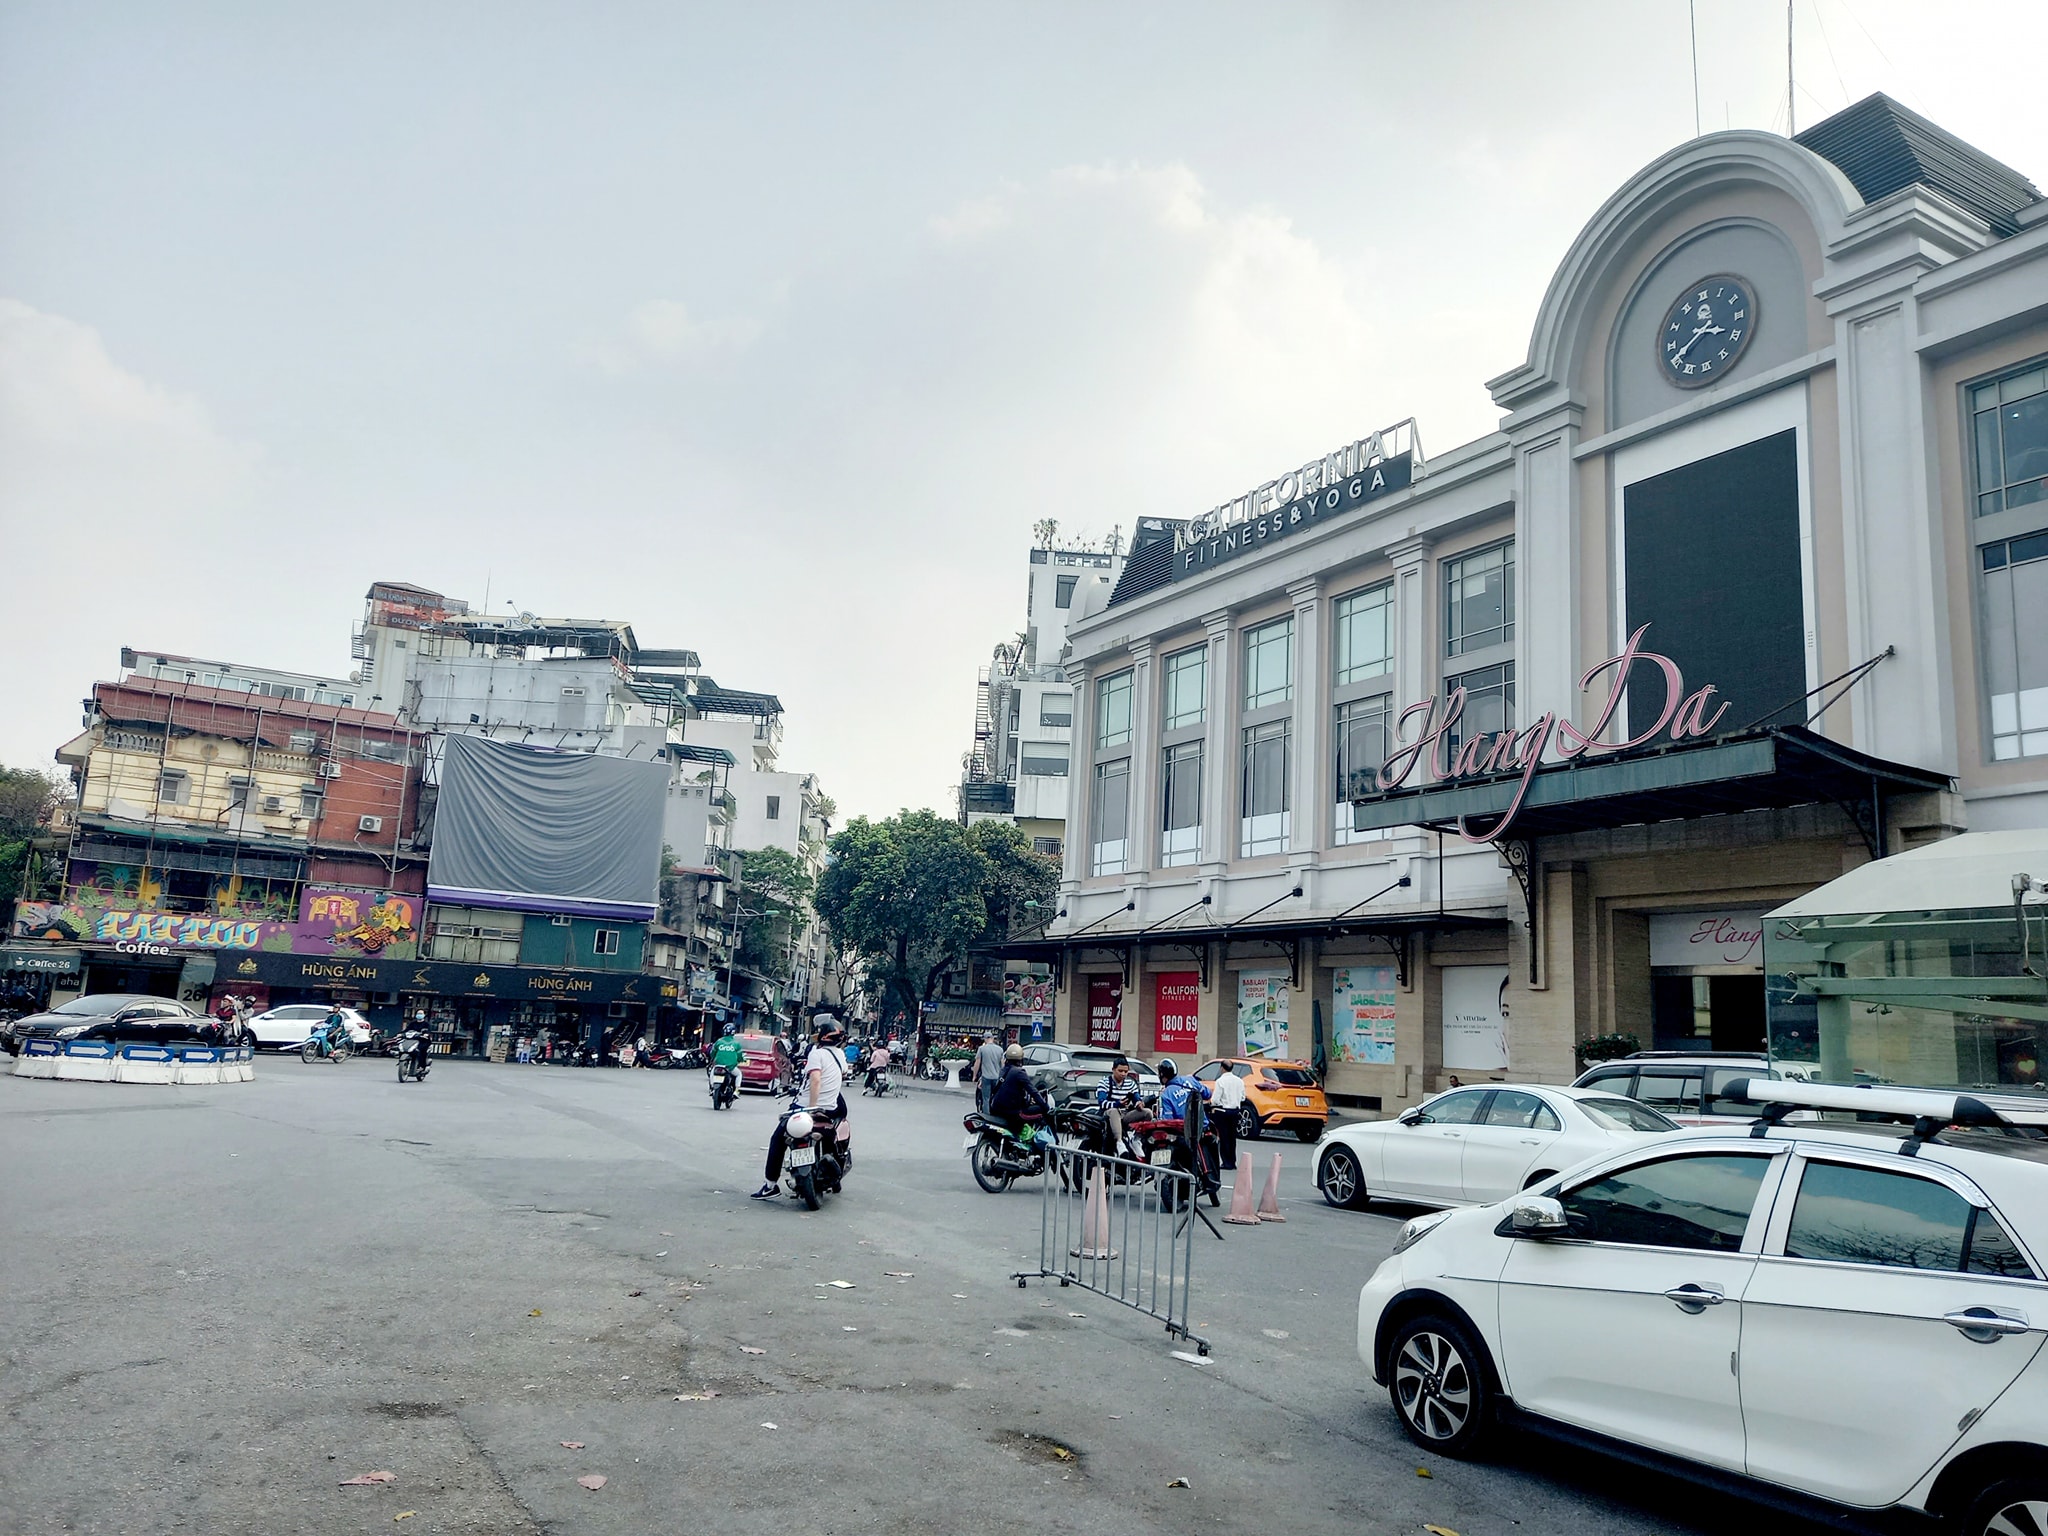 Bán Nhà chợ Hàng Da, Hoàn Kiếm, Hà Nội - 4 tầng 42m2 trung tâm - Giá nhỉnh 8 tỷ - Ảnh chính